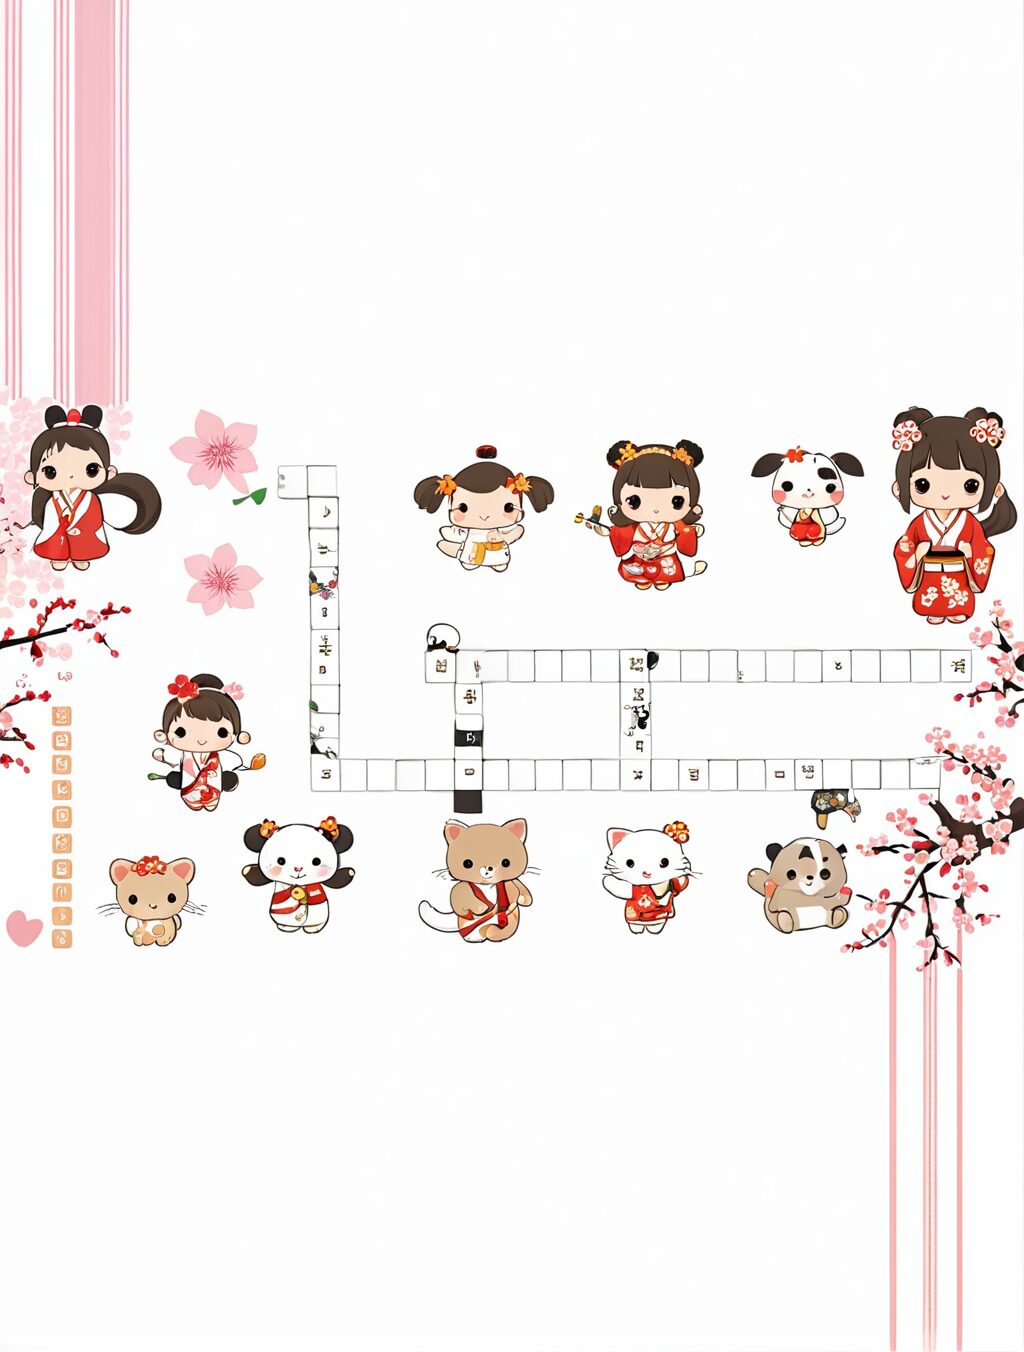 culture of cuteness in japan crossword